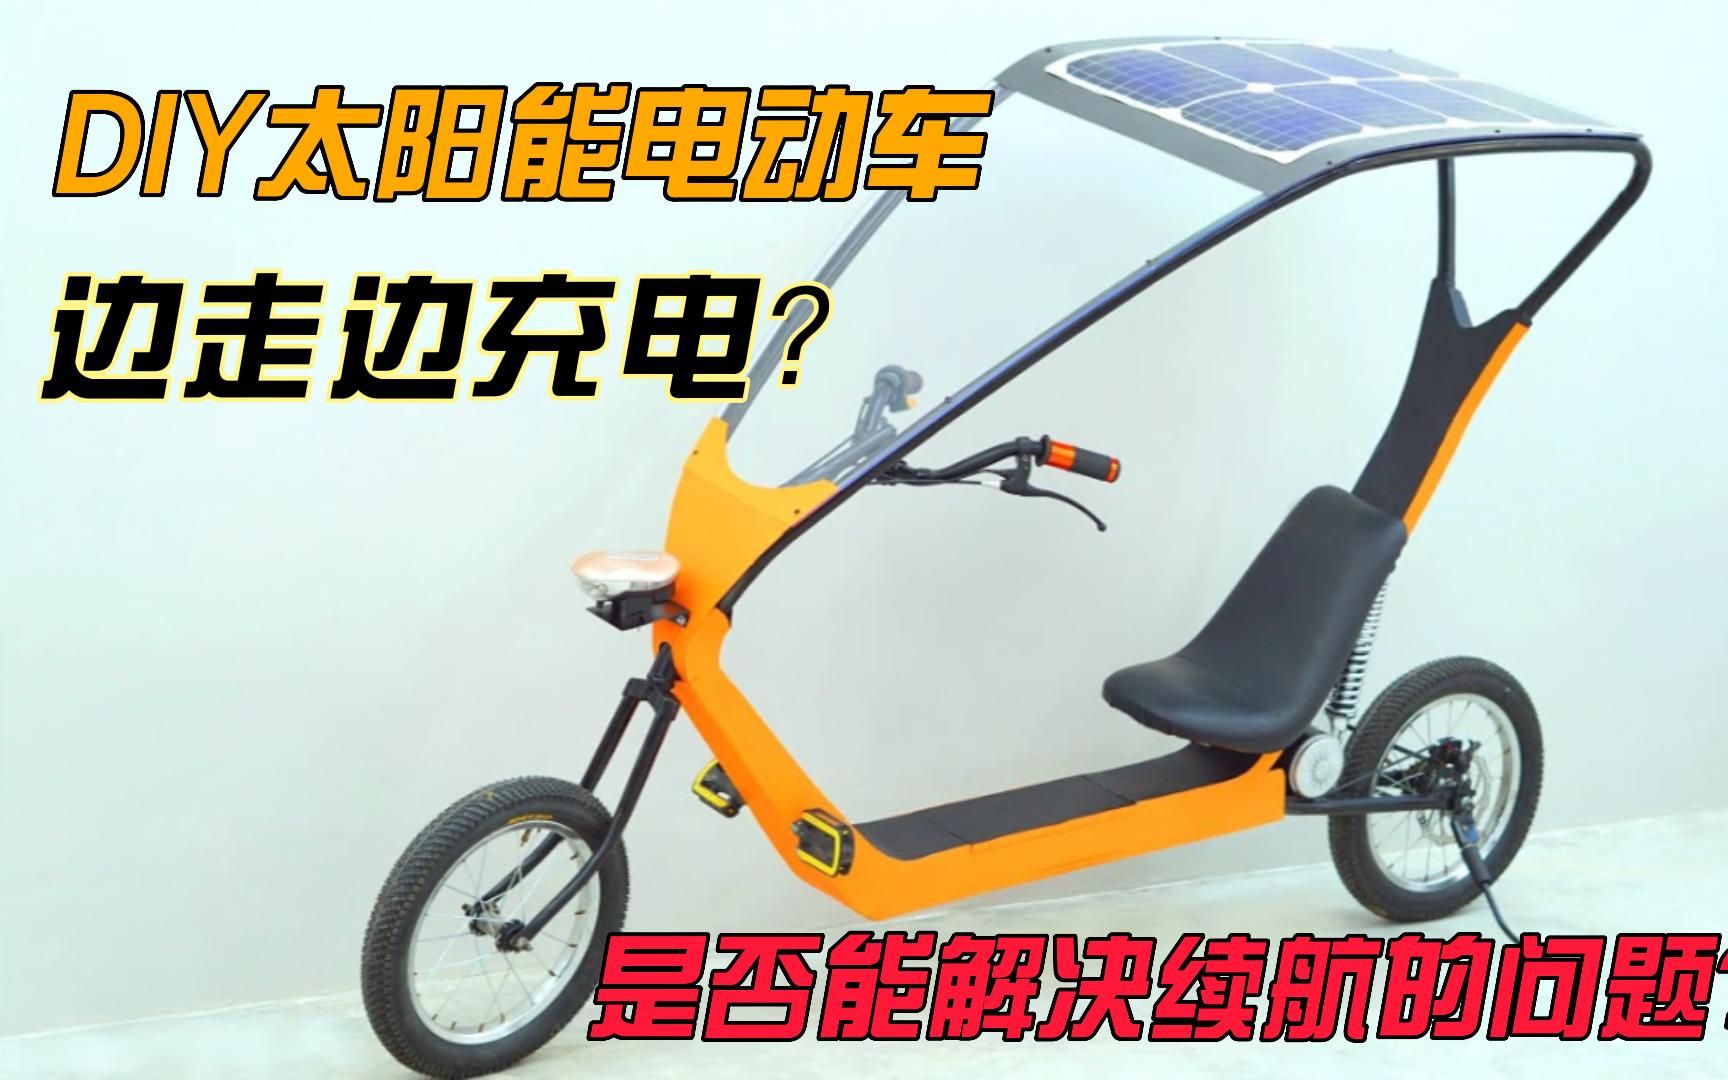 制造一辆太阳能电动车也不难啊，边骑边充？解决续航短的问题？